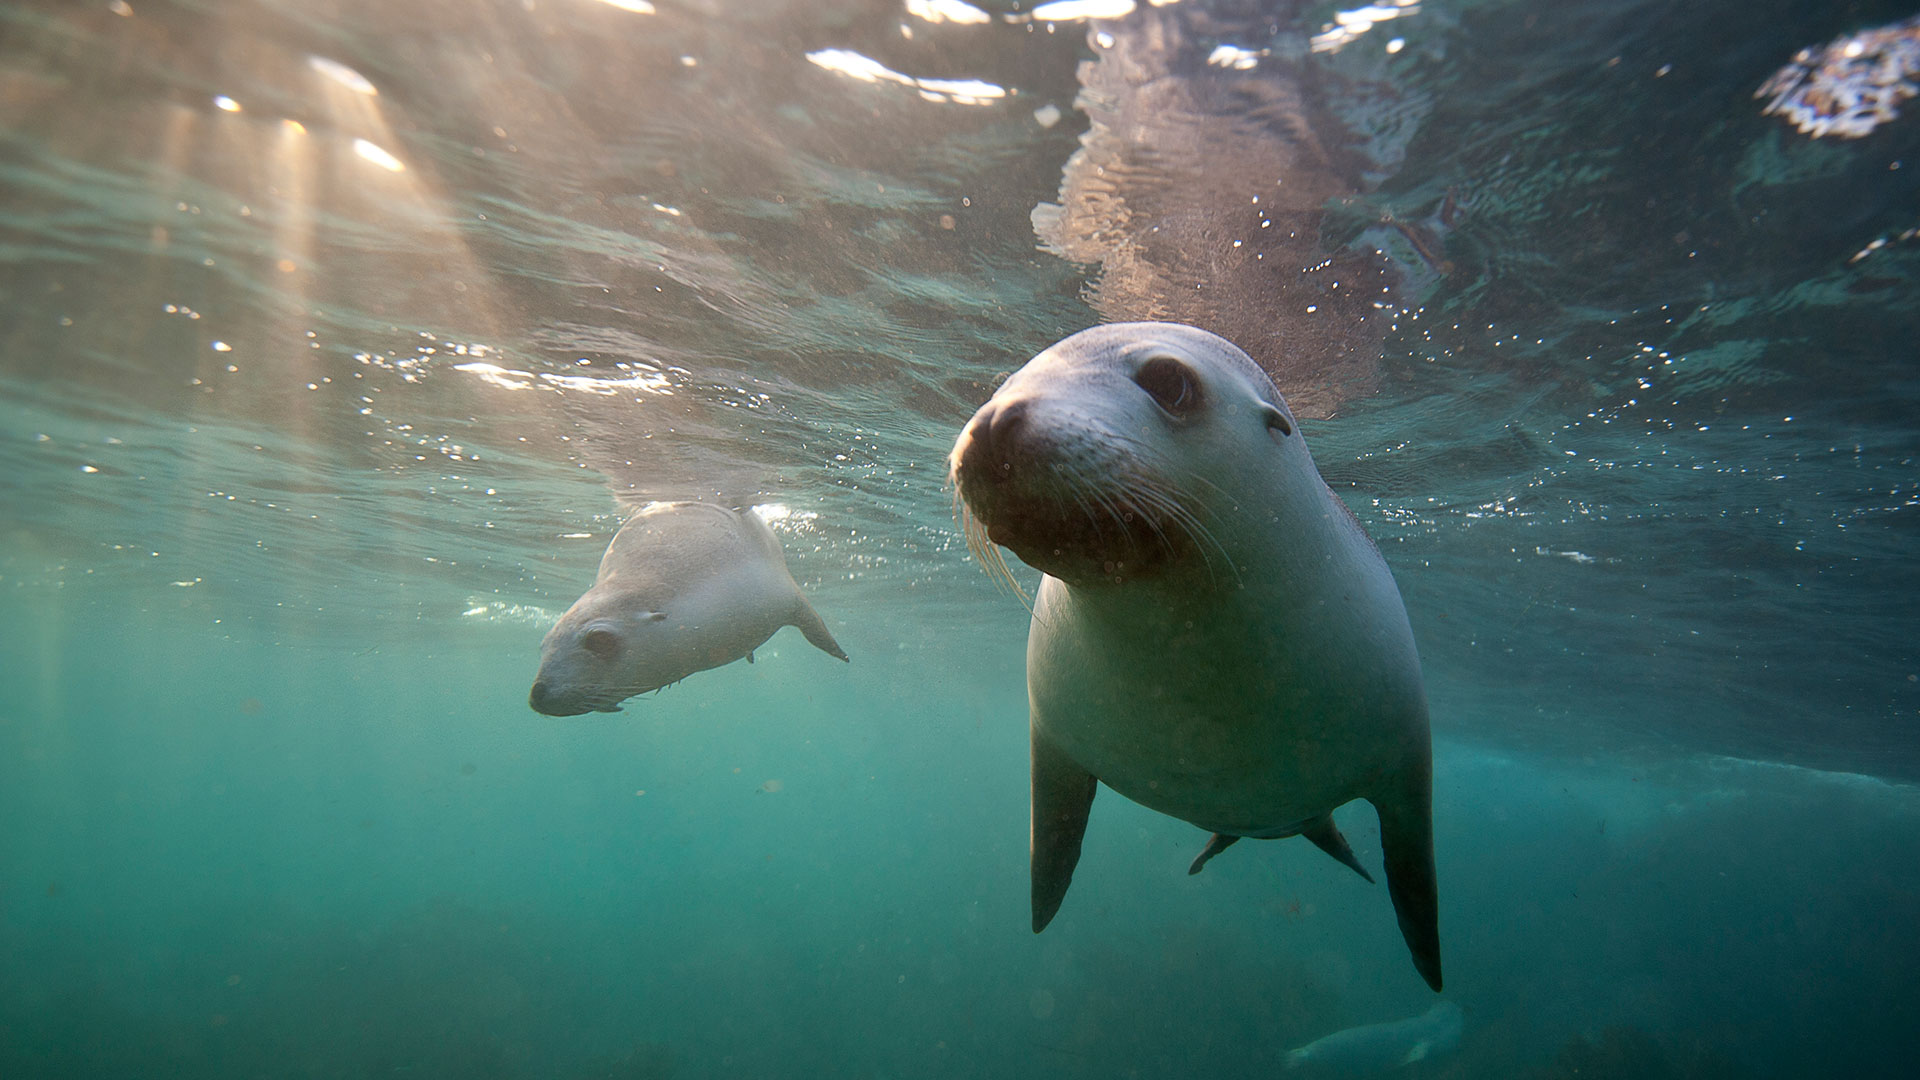 Los investigadores descubrieron que las focas capturaban presas en movimiento extendiendo sus bigotes frente a sus bocas para sentir el movimiento del agua